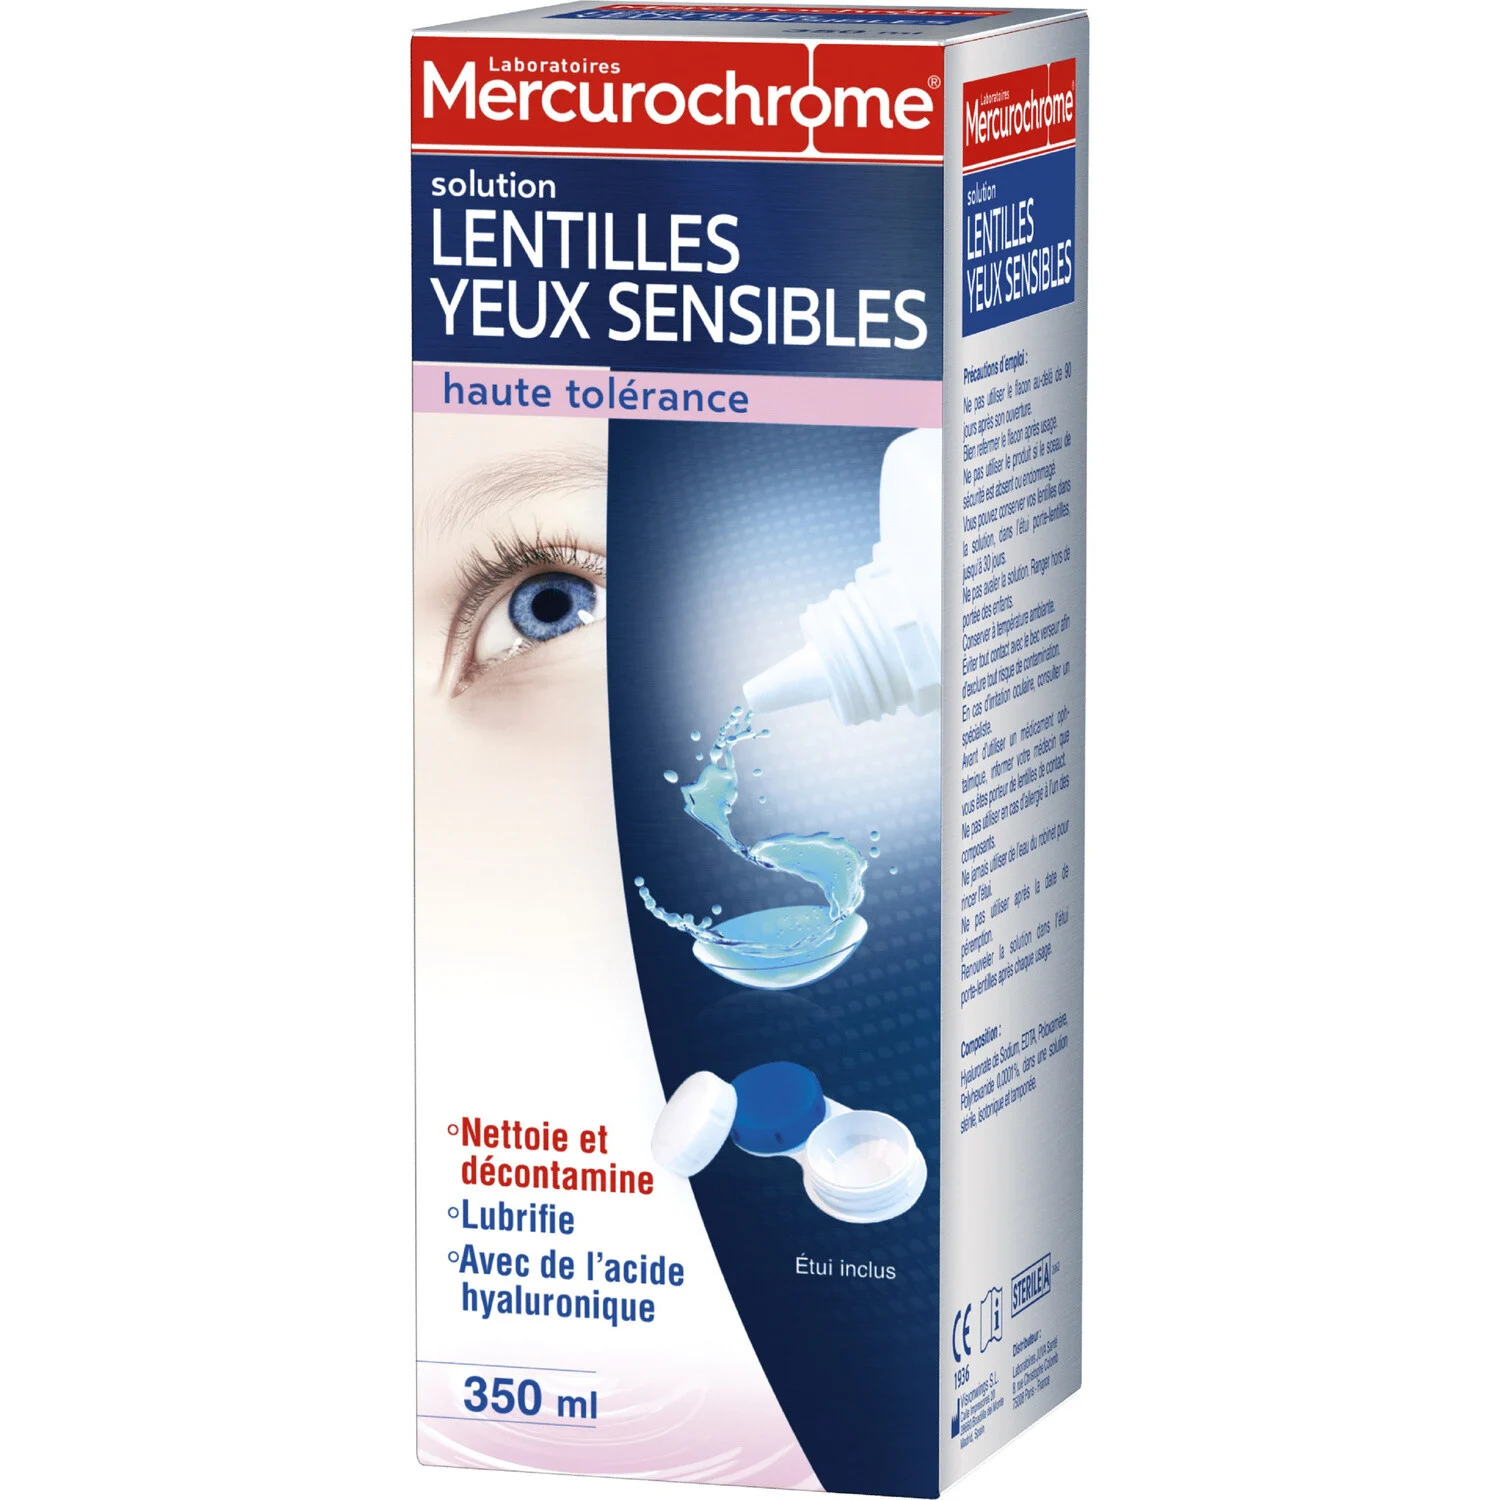 Solution Lentilles Yeux Sensibles 350ml - Mercurochrome